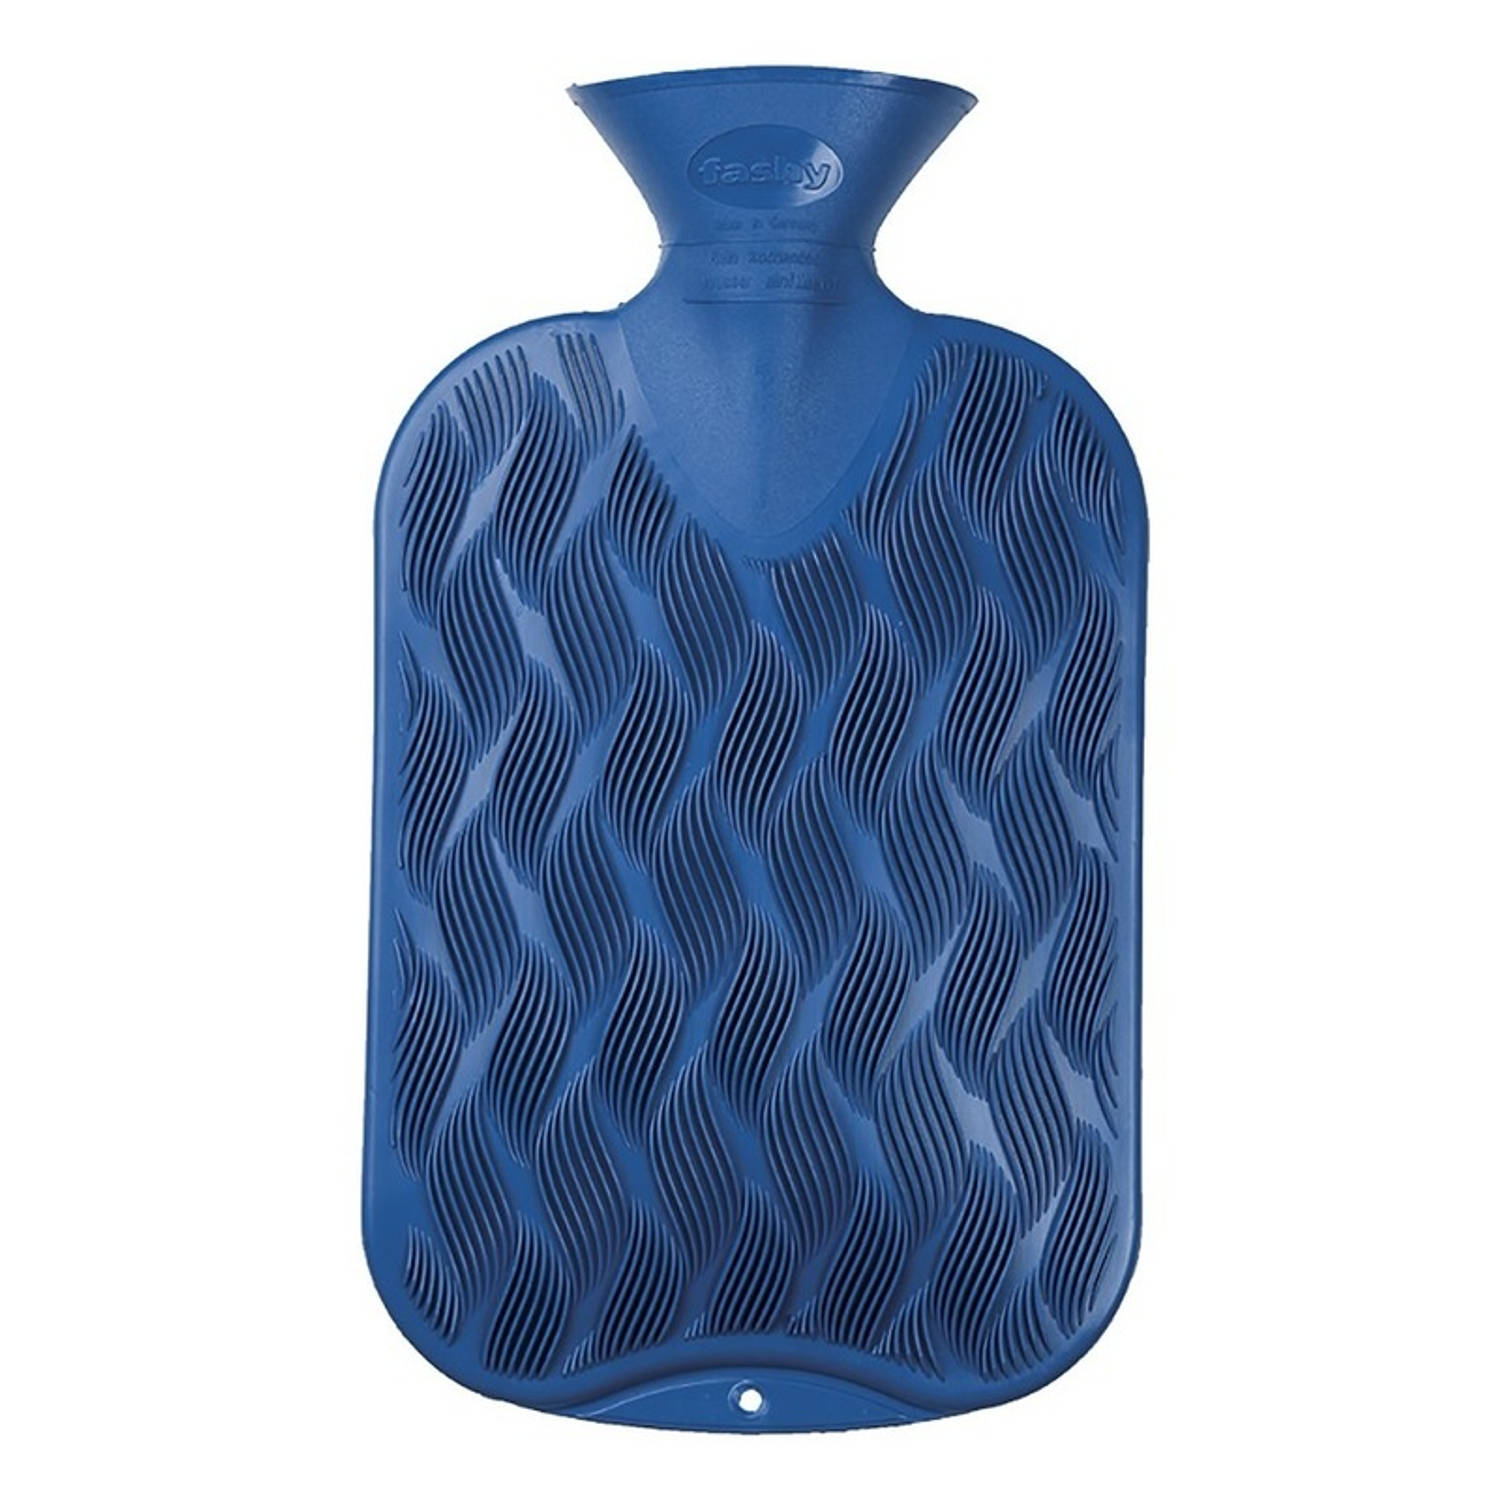 Kruik blauw golf-ribbel 2 liter warmwaterkruik